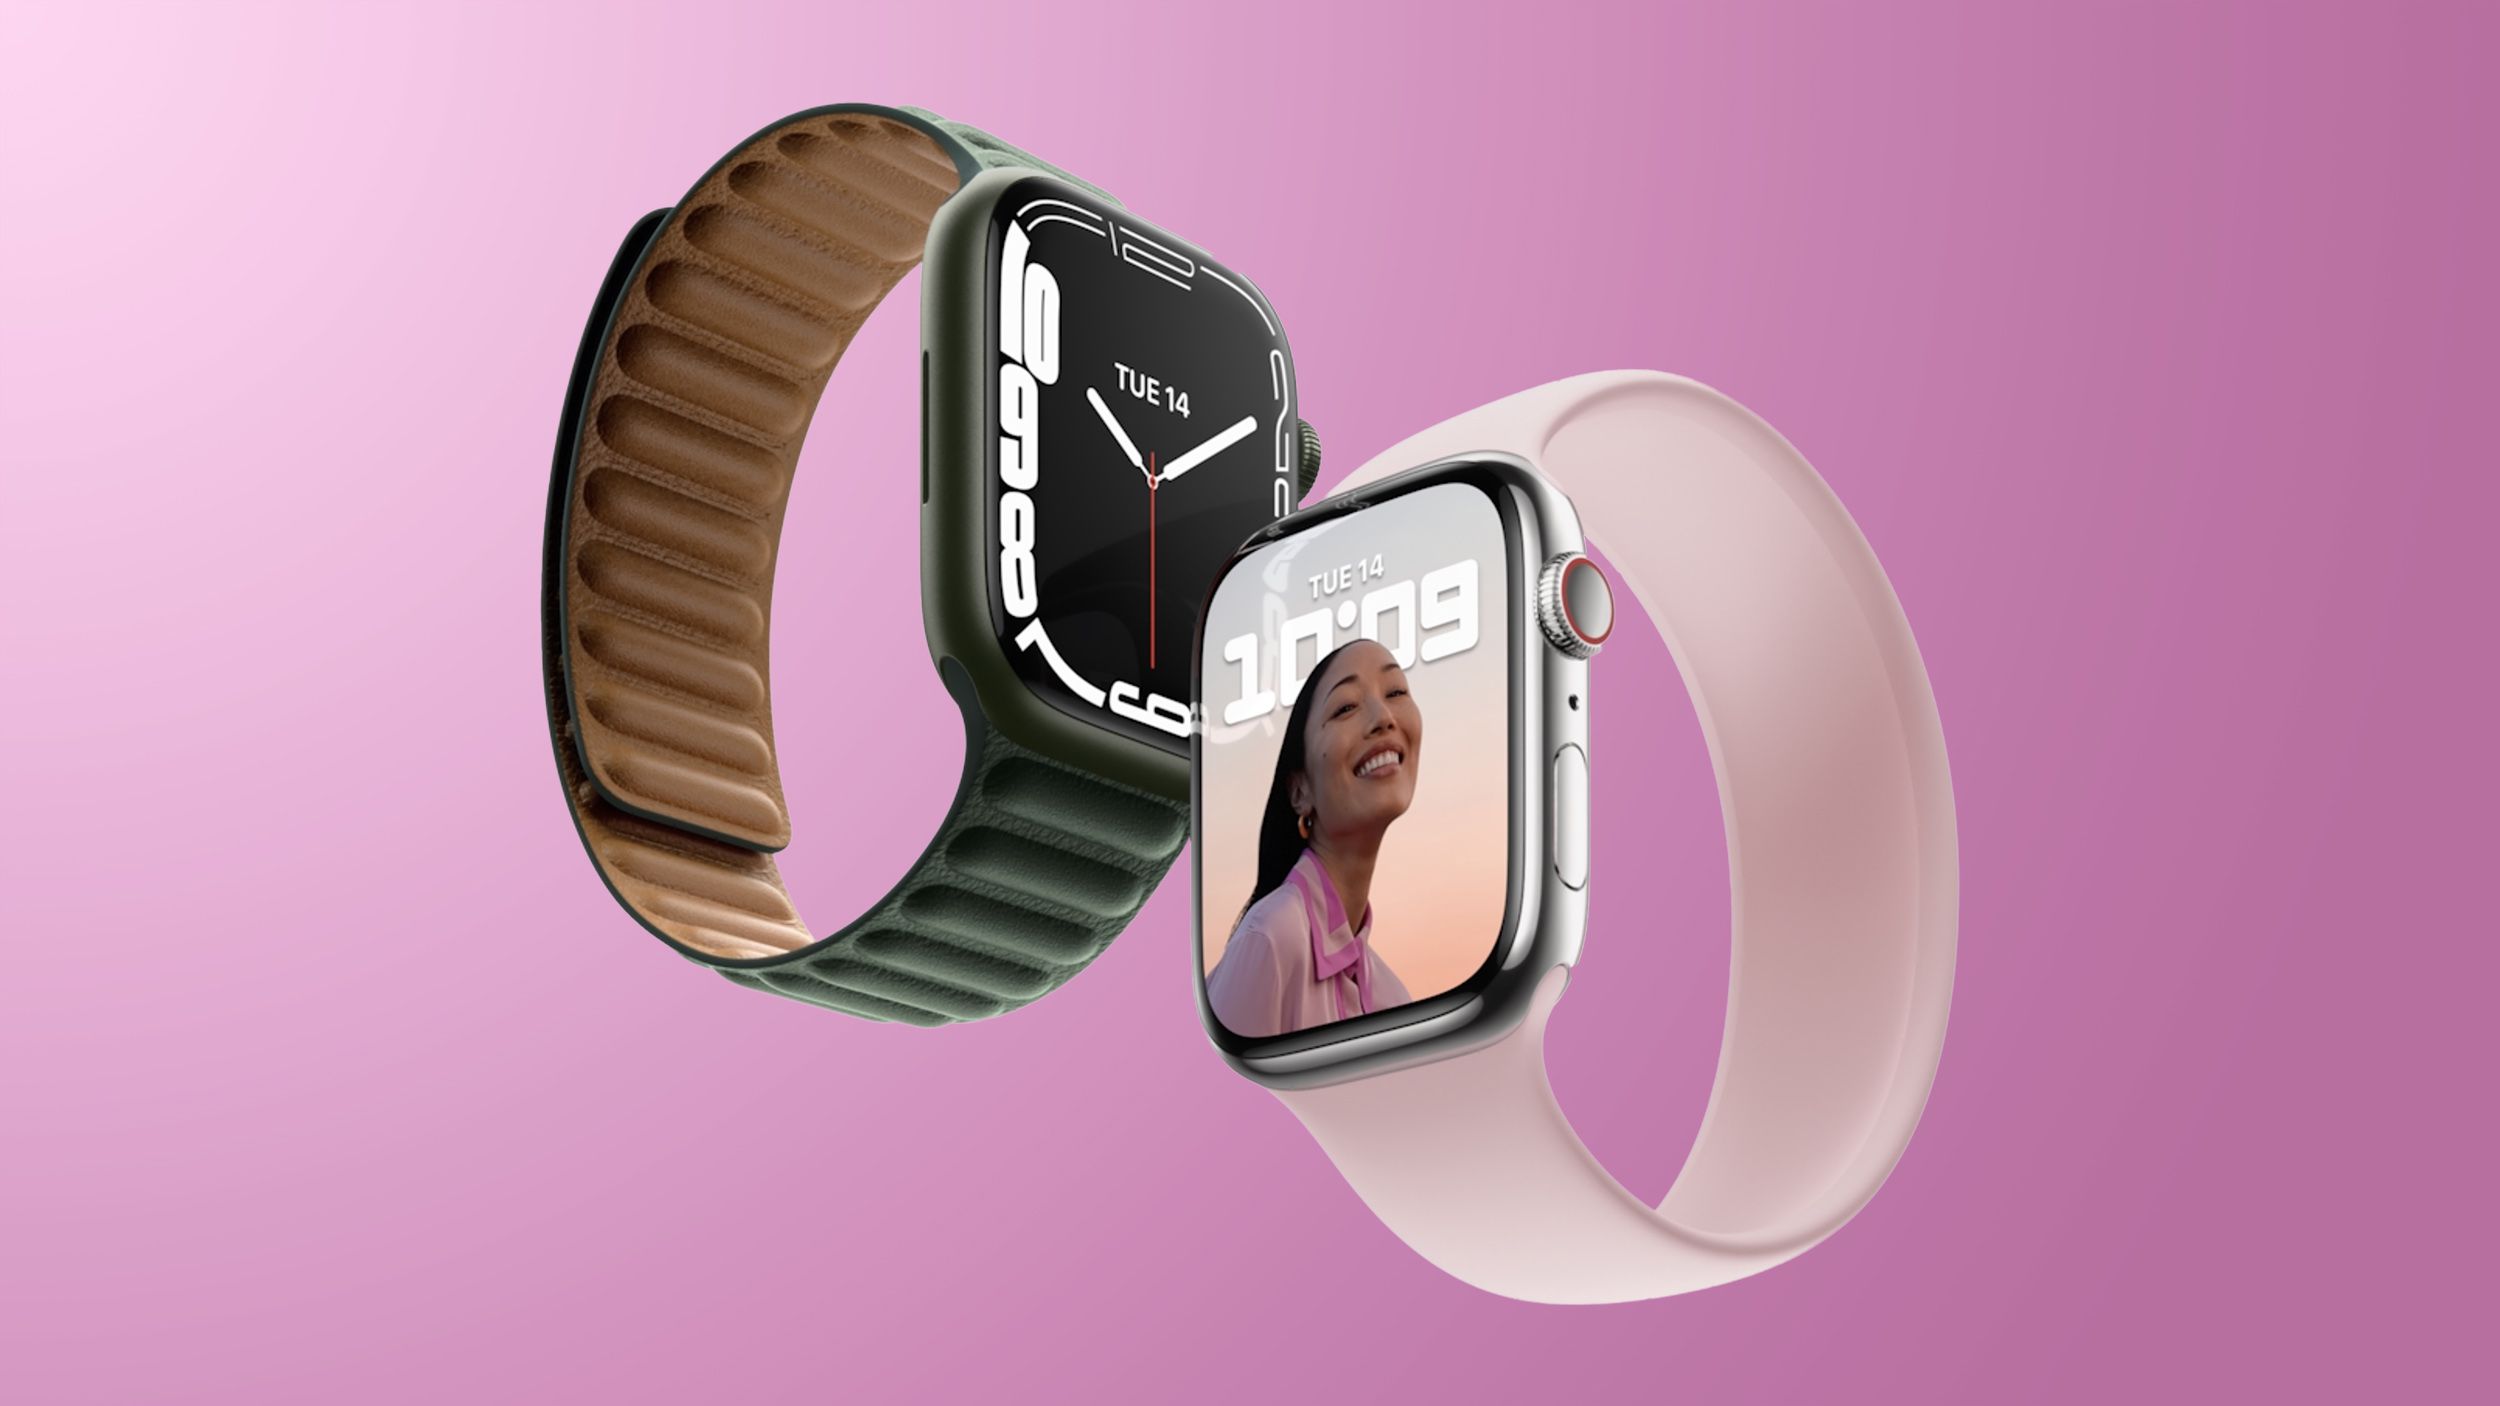 Ming-Chi Kuo confirma tres modelos de Apple Watch que llegarán en 2022, incluida la versión resistente para deportes extremos